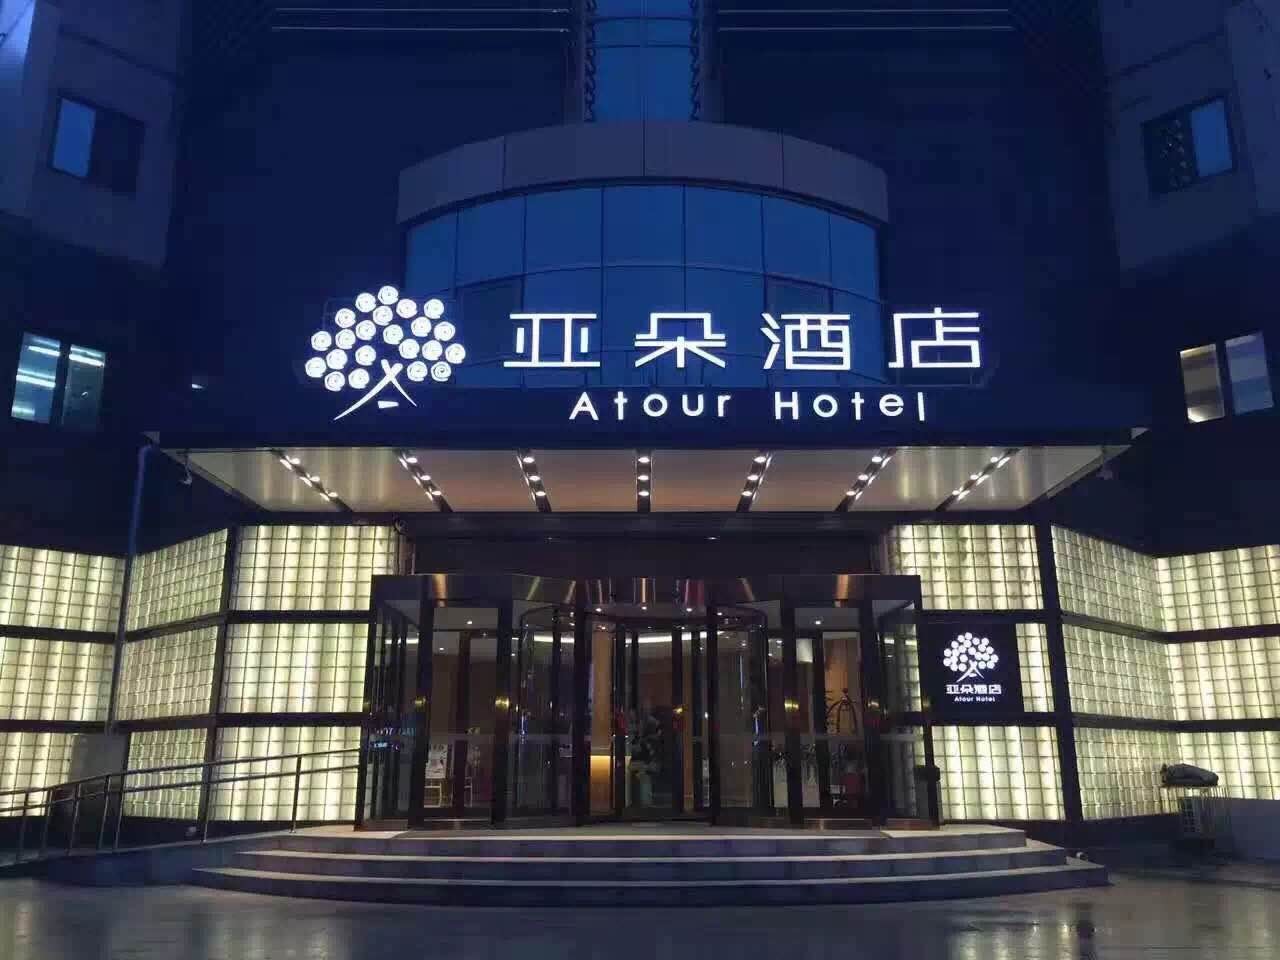 亚朵酒店北京贵园南里店.jpg